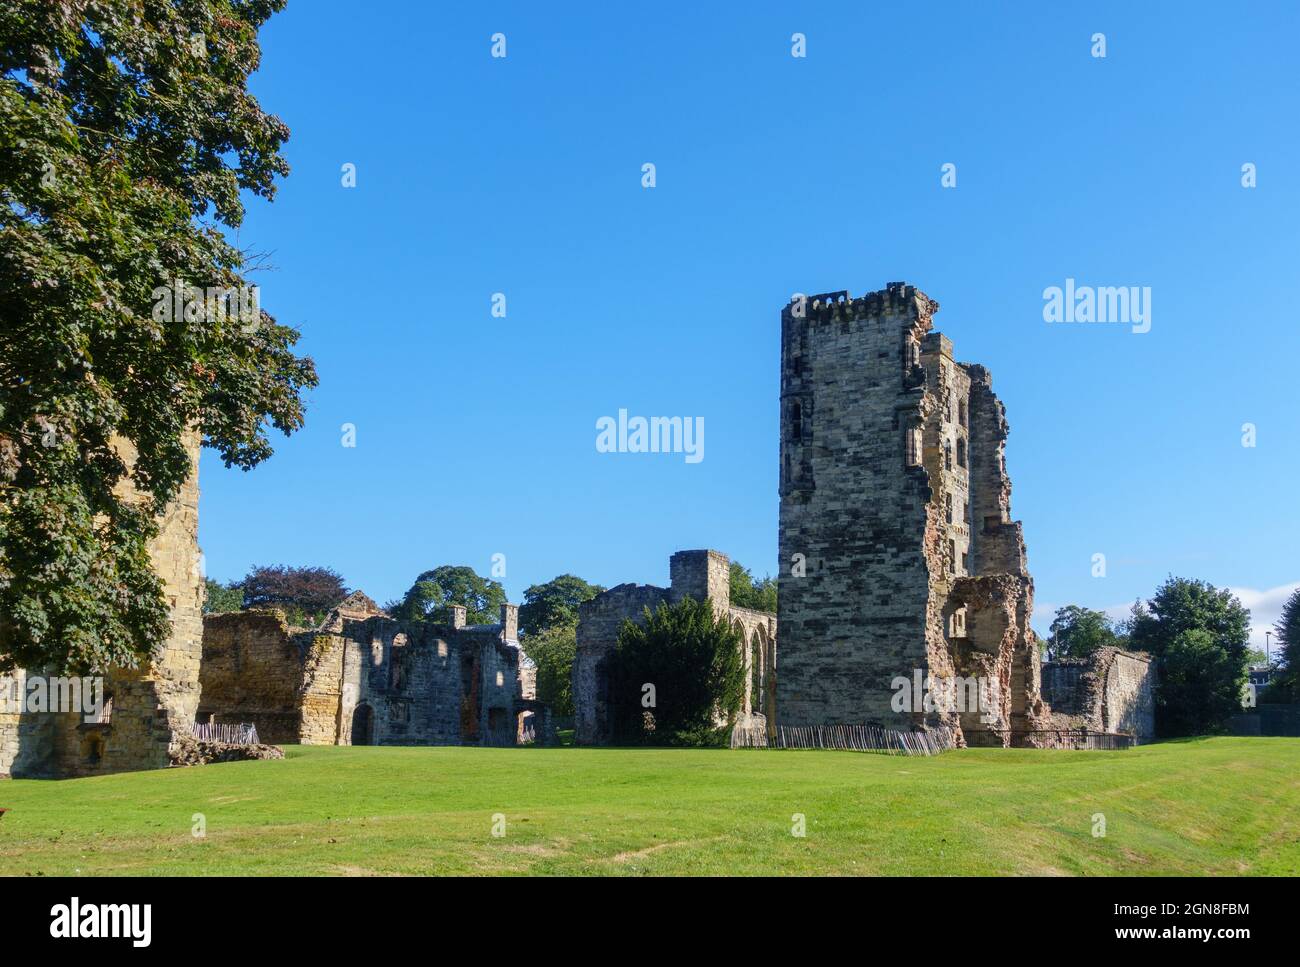 Ruins of Ashby-de-la-Zouch Castle, Ashby-de-la-Zouch, Leicestershire, East Midlands, UK Stock Photo